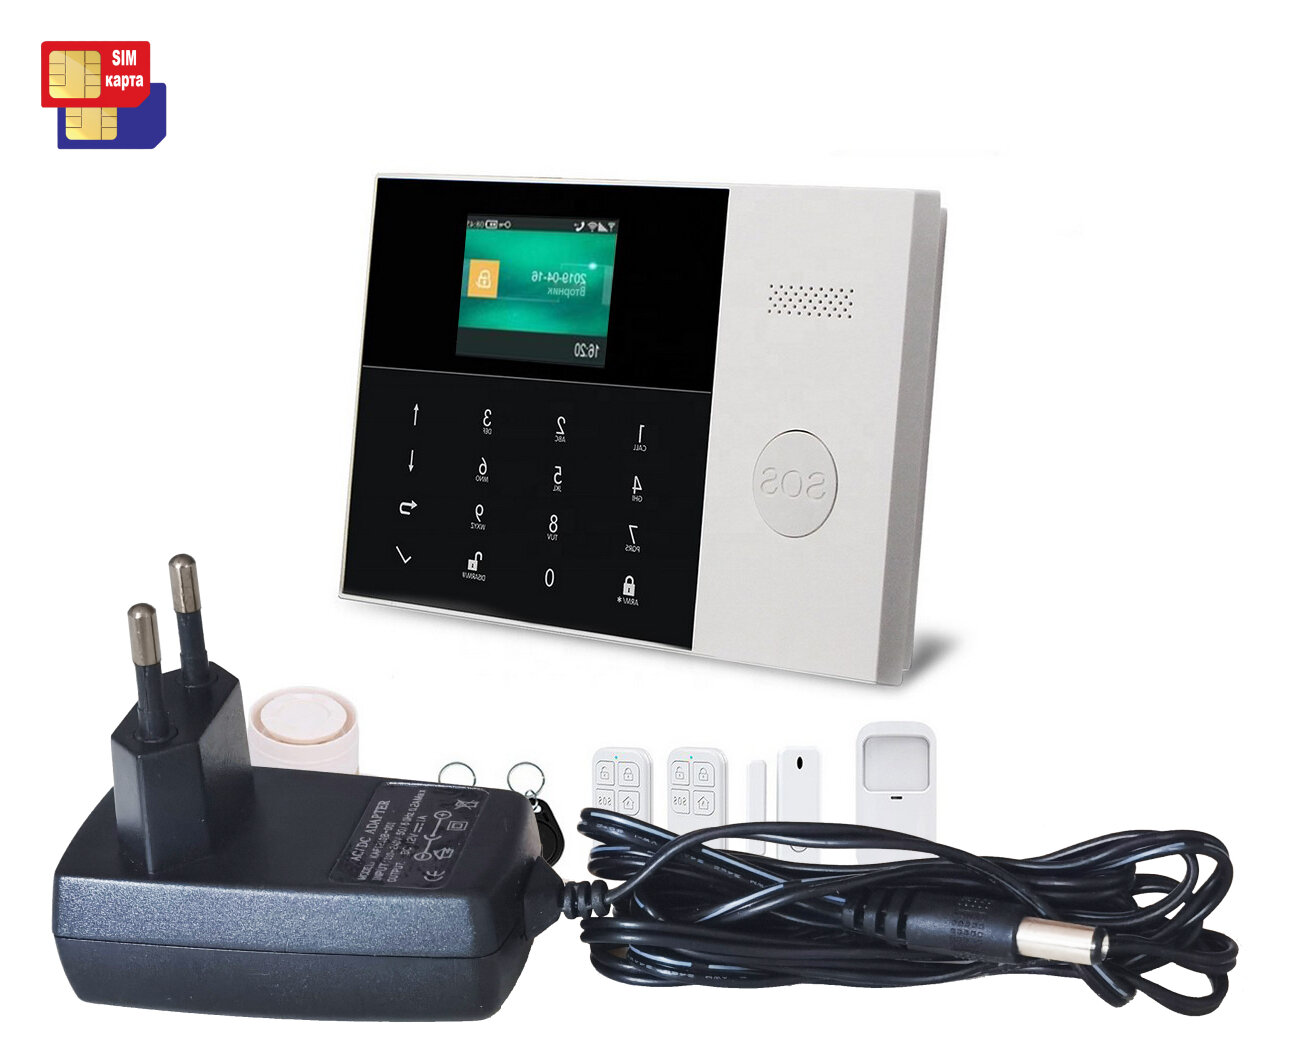 GSM/Wi-Fi сигнализация беспроводная Страж Мод: Шериф GSM (S16779VIP) - GSM сигнализация в гараж и в магазин. До 5 телефонных номеров.